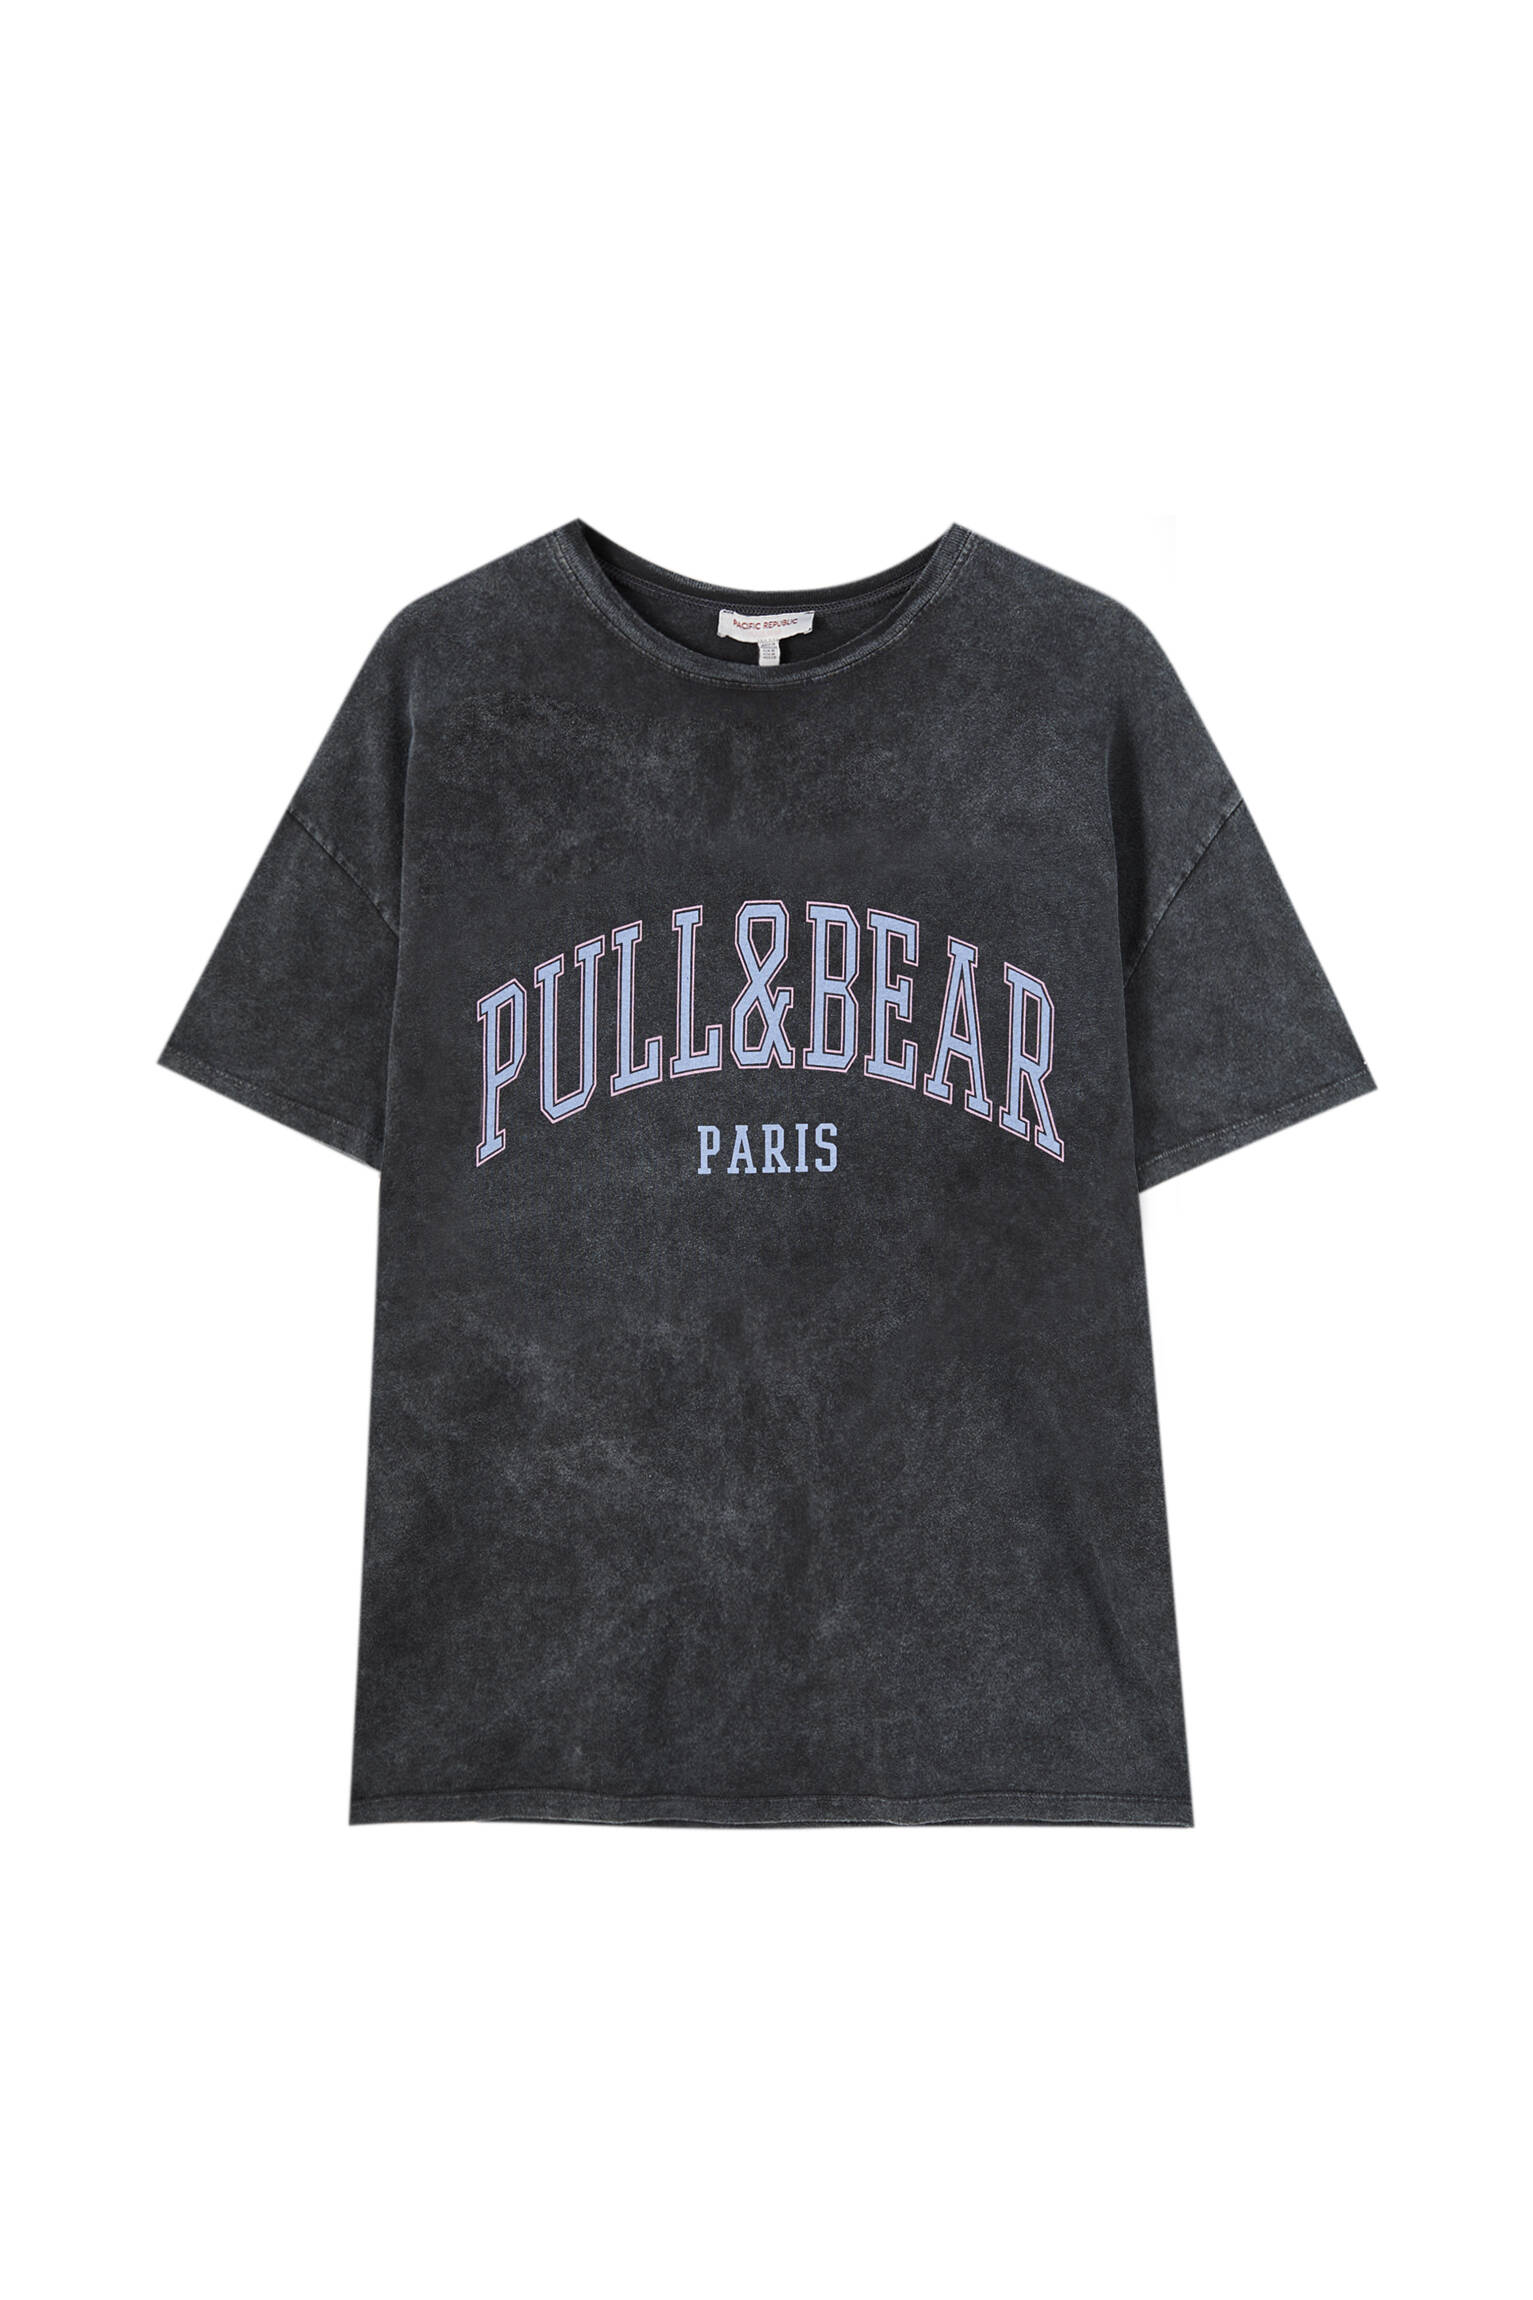 Pull&bear Femme T-shirt 100 % Coton à Col Rond Et Manches Courtes, Avec Logo Pull&bear Et Inscription Paris Contrastante Sur La Poitrine. Noir DÉlavÉ L